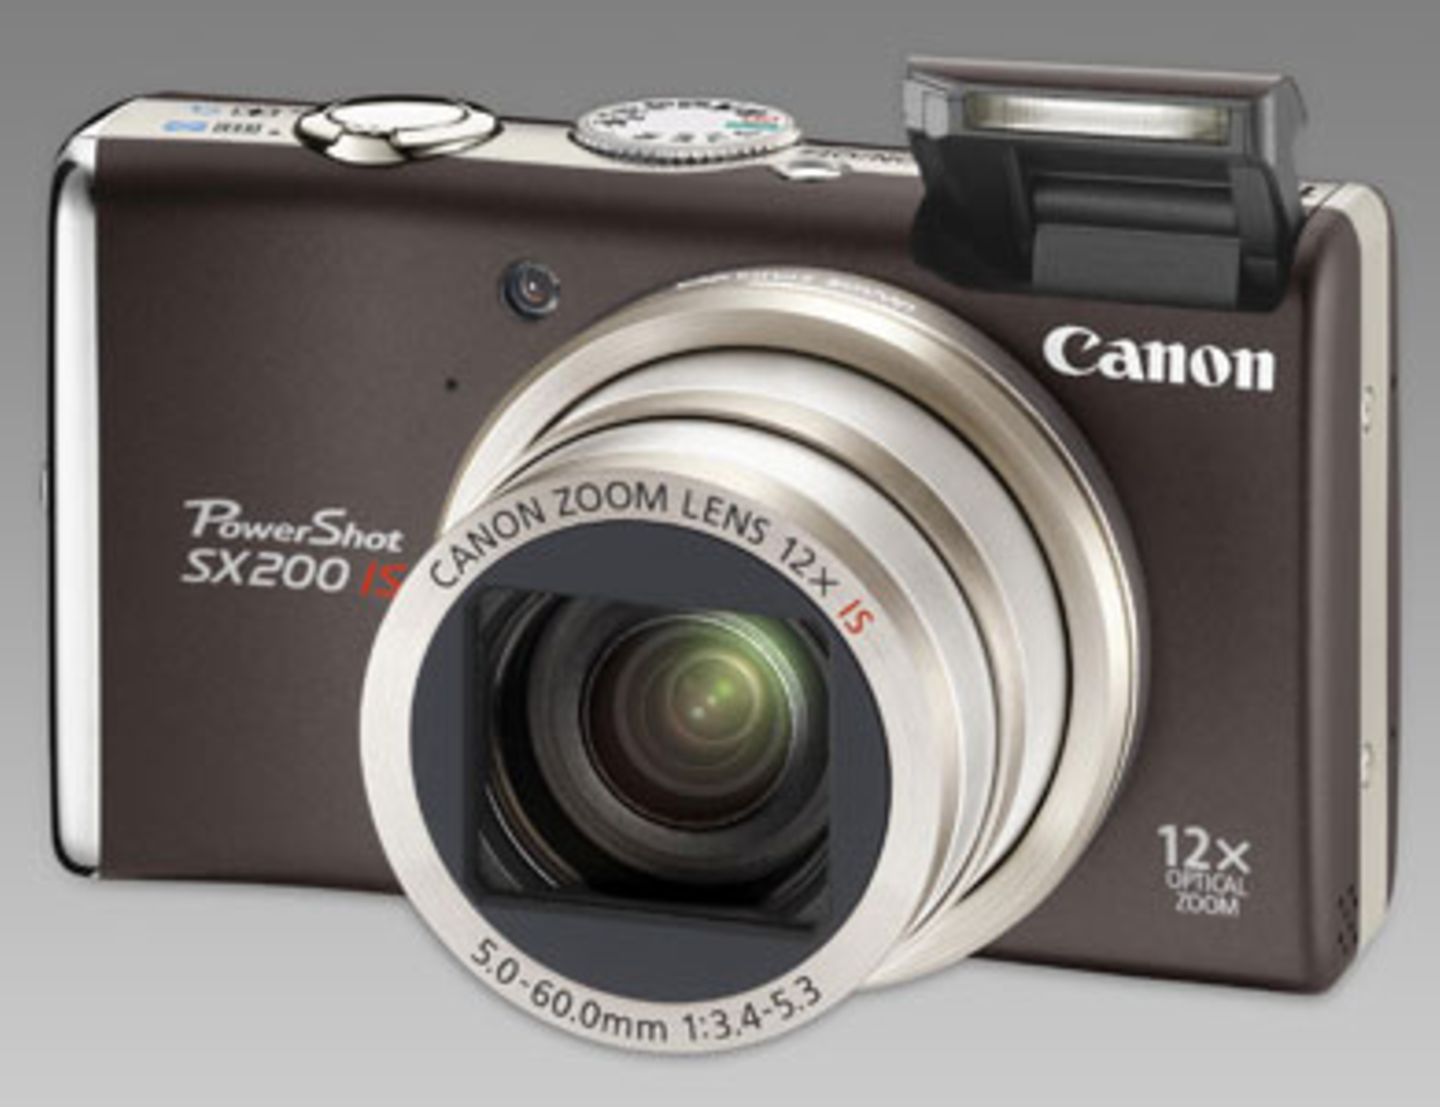 Edel ist das Outfit der Canon Powershot SX200. Mit ihrem 28mm-Weitwinkelobjektiv und 12facher Zoomleistung eignet sie sich perfekt für ausgedehnte Landschaftspanoramen oder Detailaufnahmen von weit entfernten Motiven. Um 250 Euro. Mehr Informationen findet ihr bei Canon.